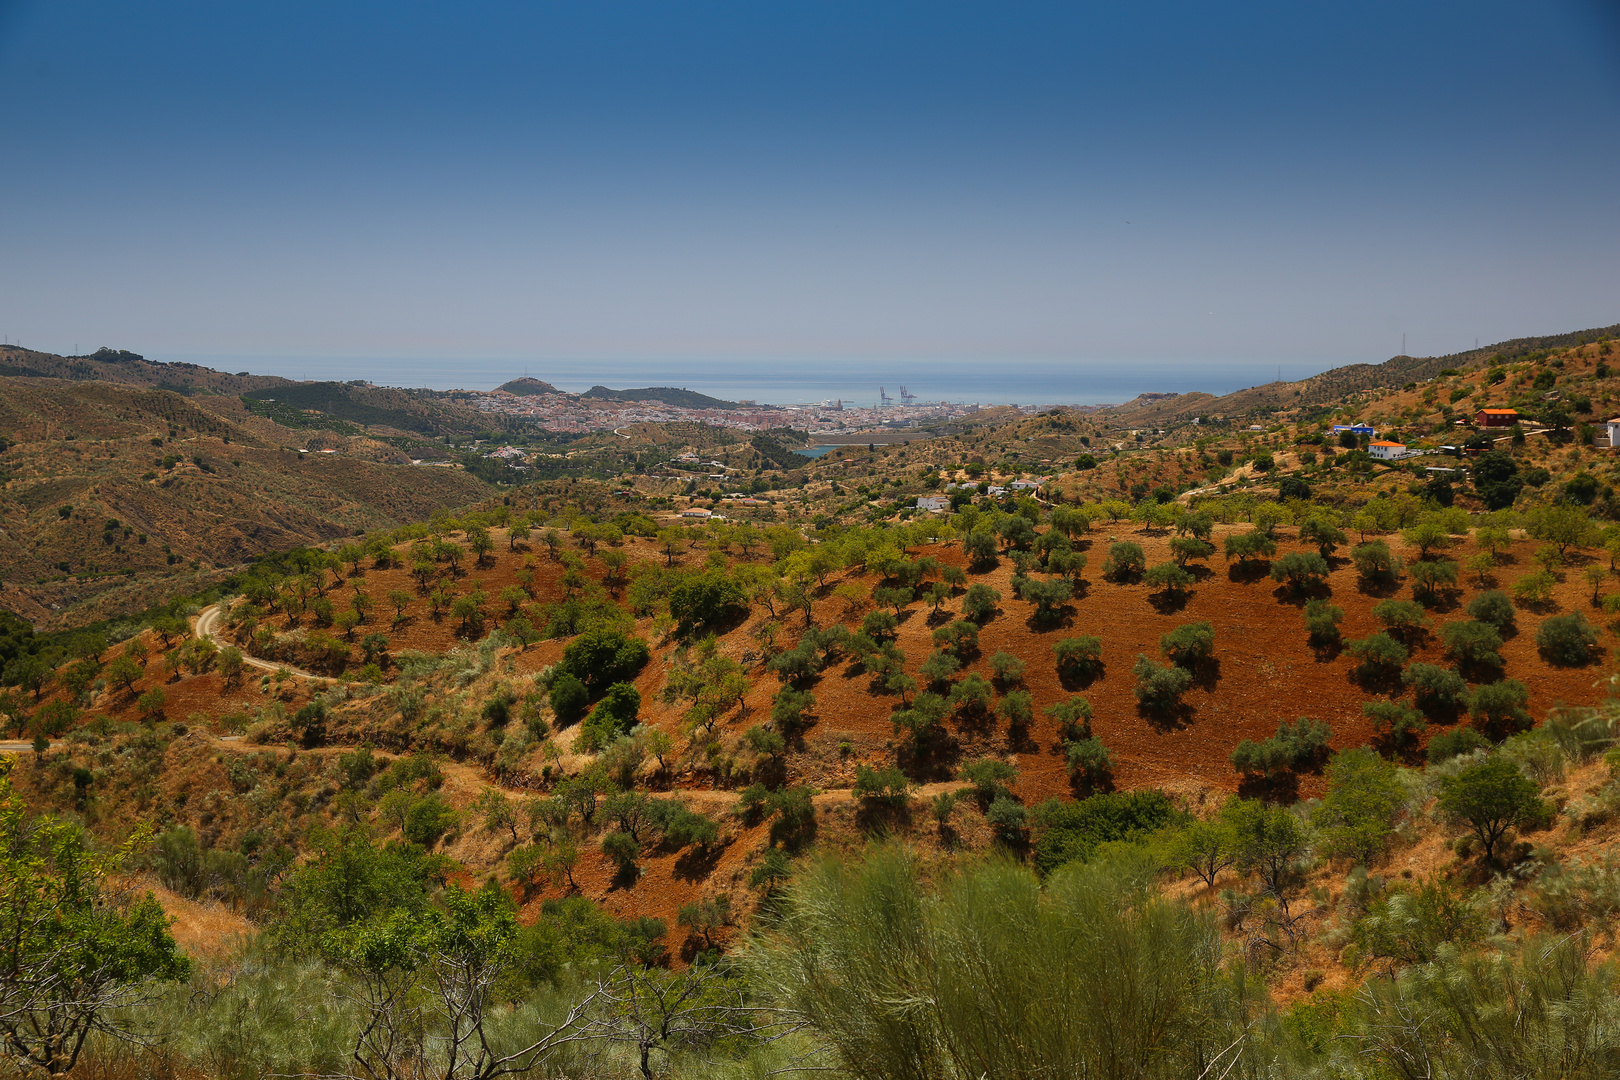 Malaga vom Hinterland aus gesehen